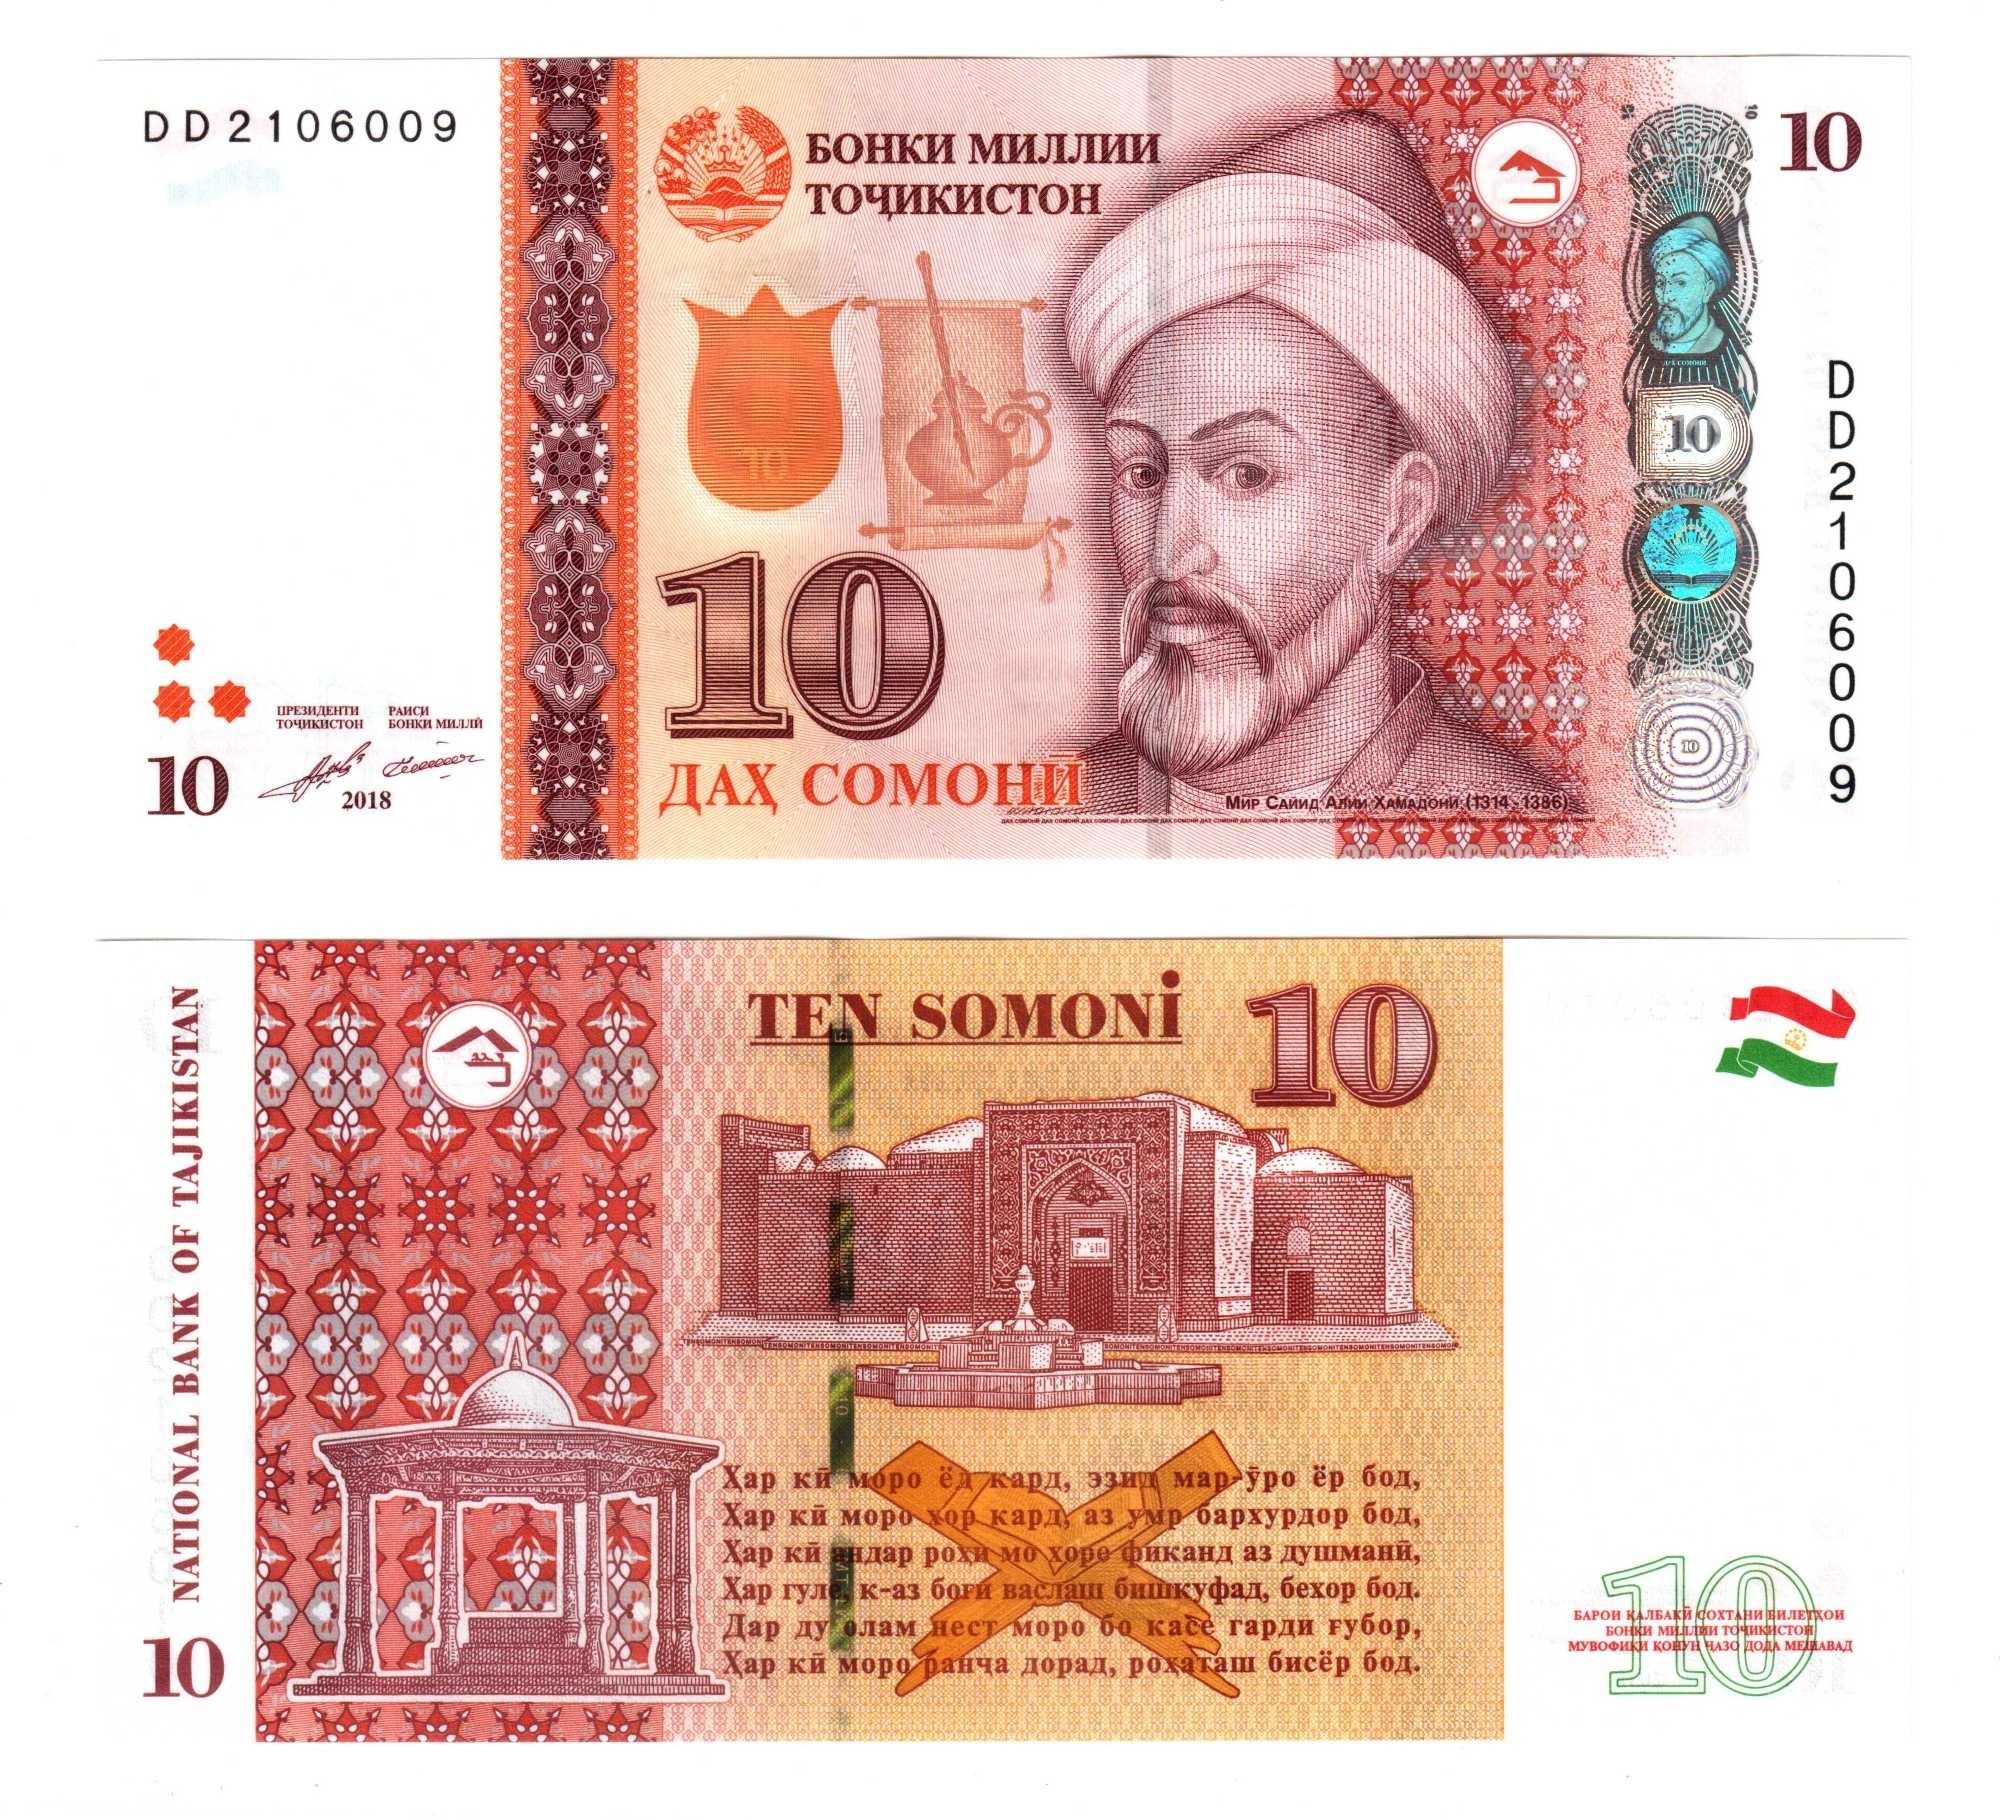 Таджикские 10 рублей. Купюры Таджикистана. Купюры Таджикистана 2021. Купюры Таджикистана 1000 Сомони.